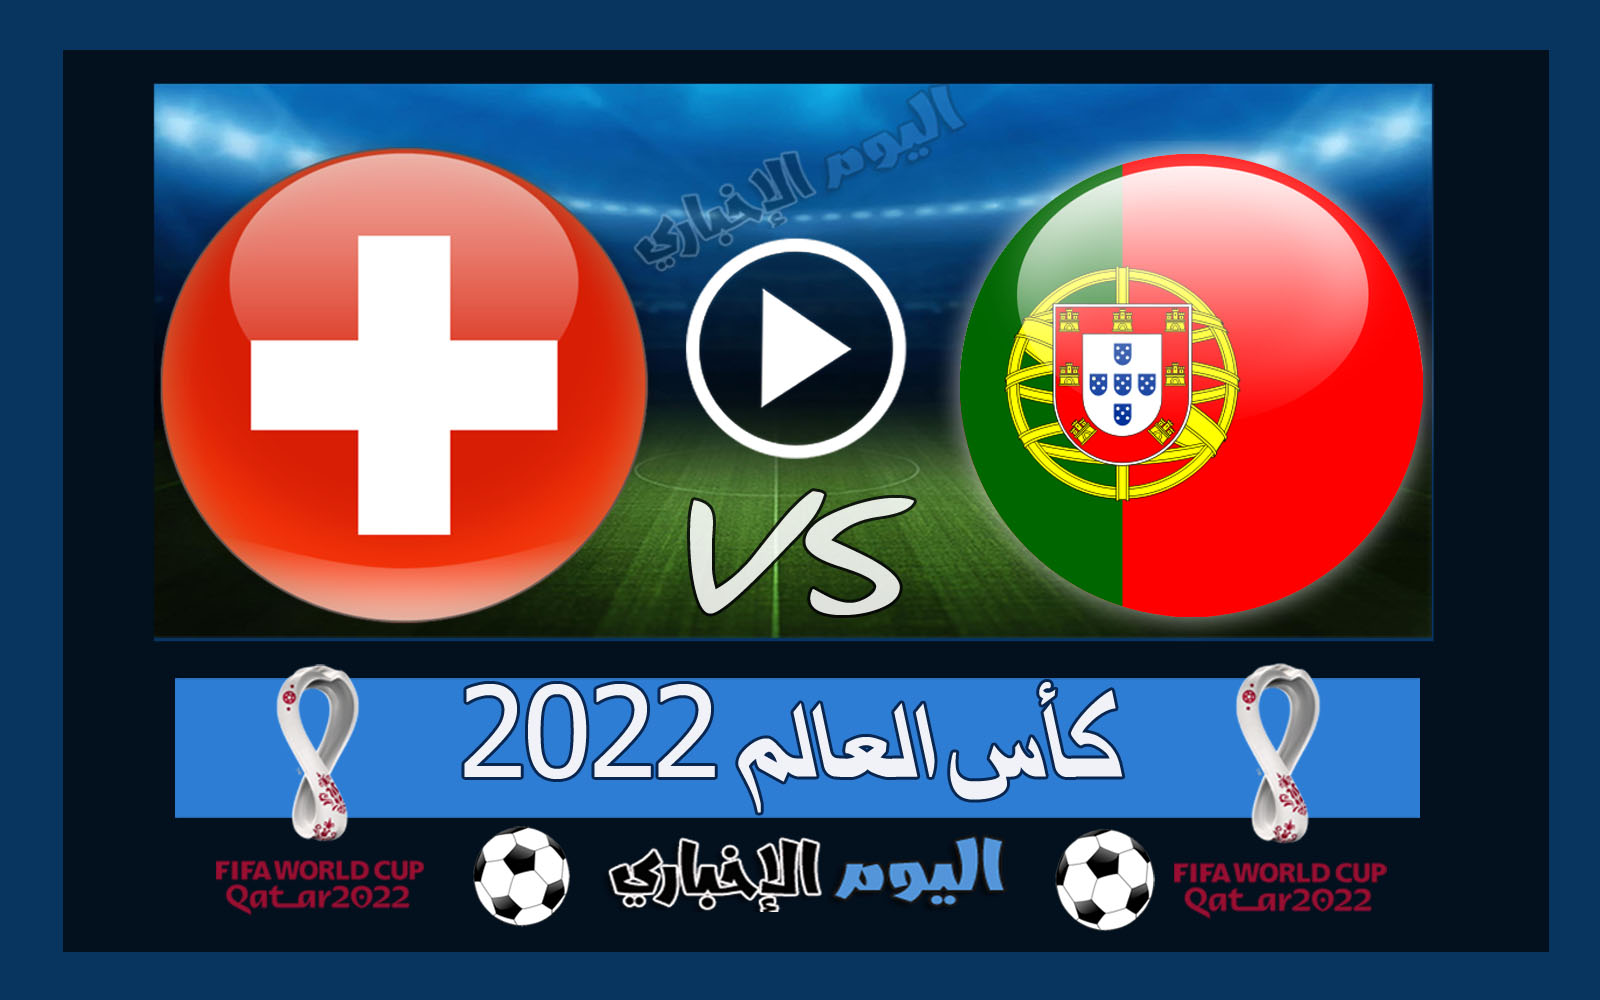 “بالسداسية” نتيجة اهداف مباراة البرتغال وسويسرا 6-1 ملخص اليوم في كأس العالم 2022